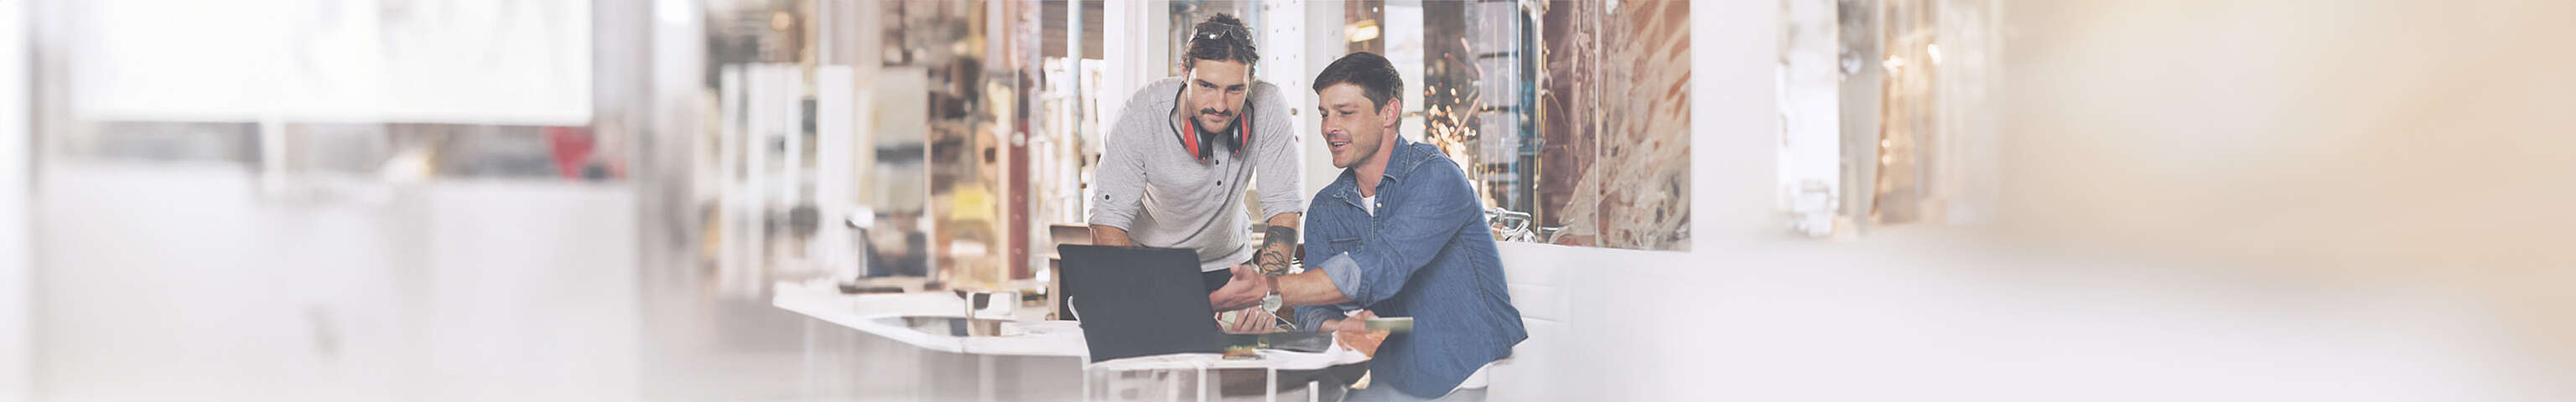 Zwei Männer schauen auf einen Laptop